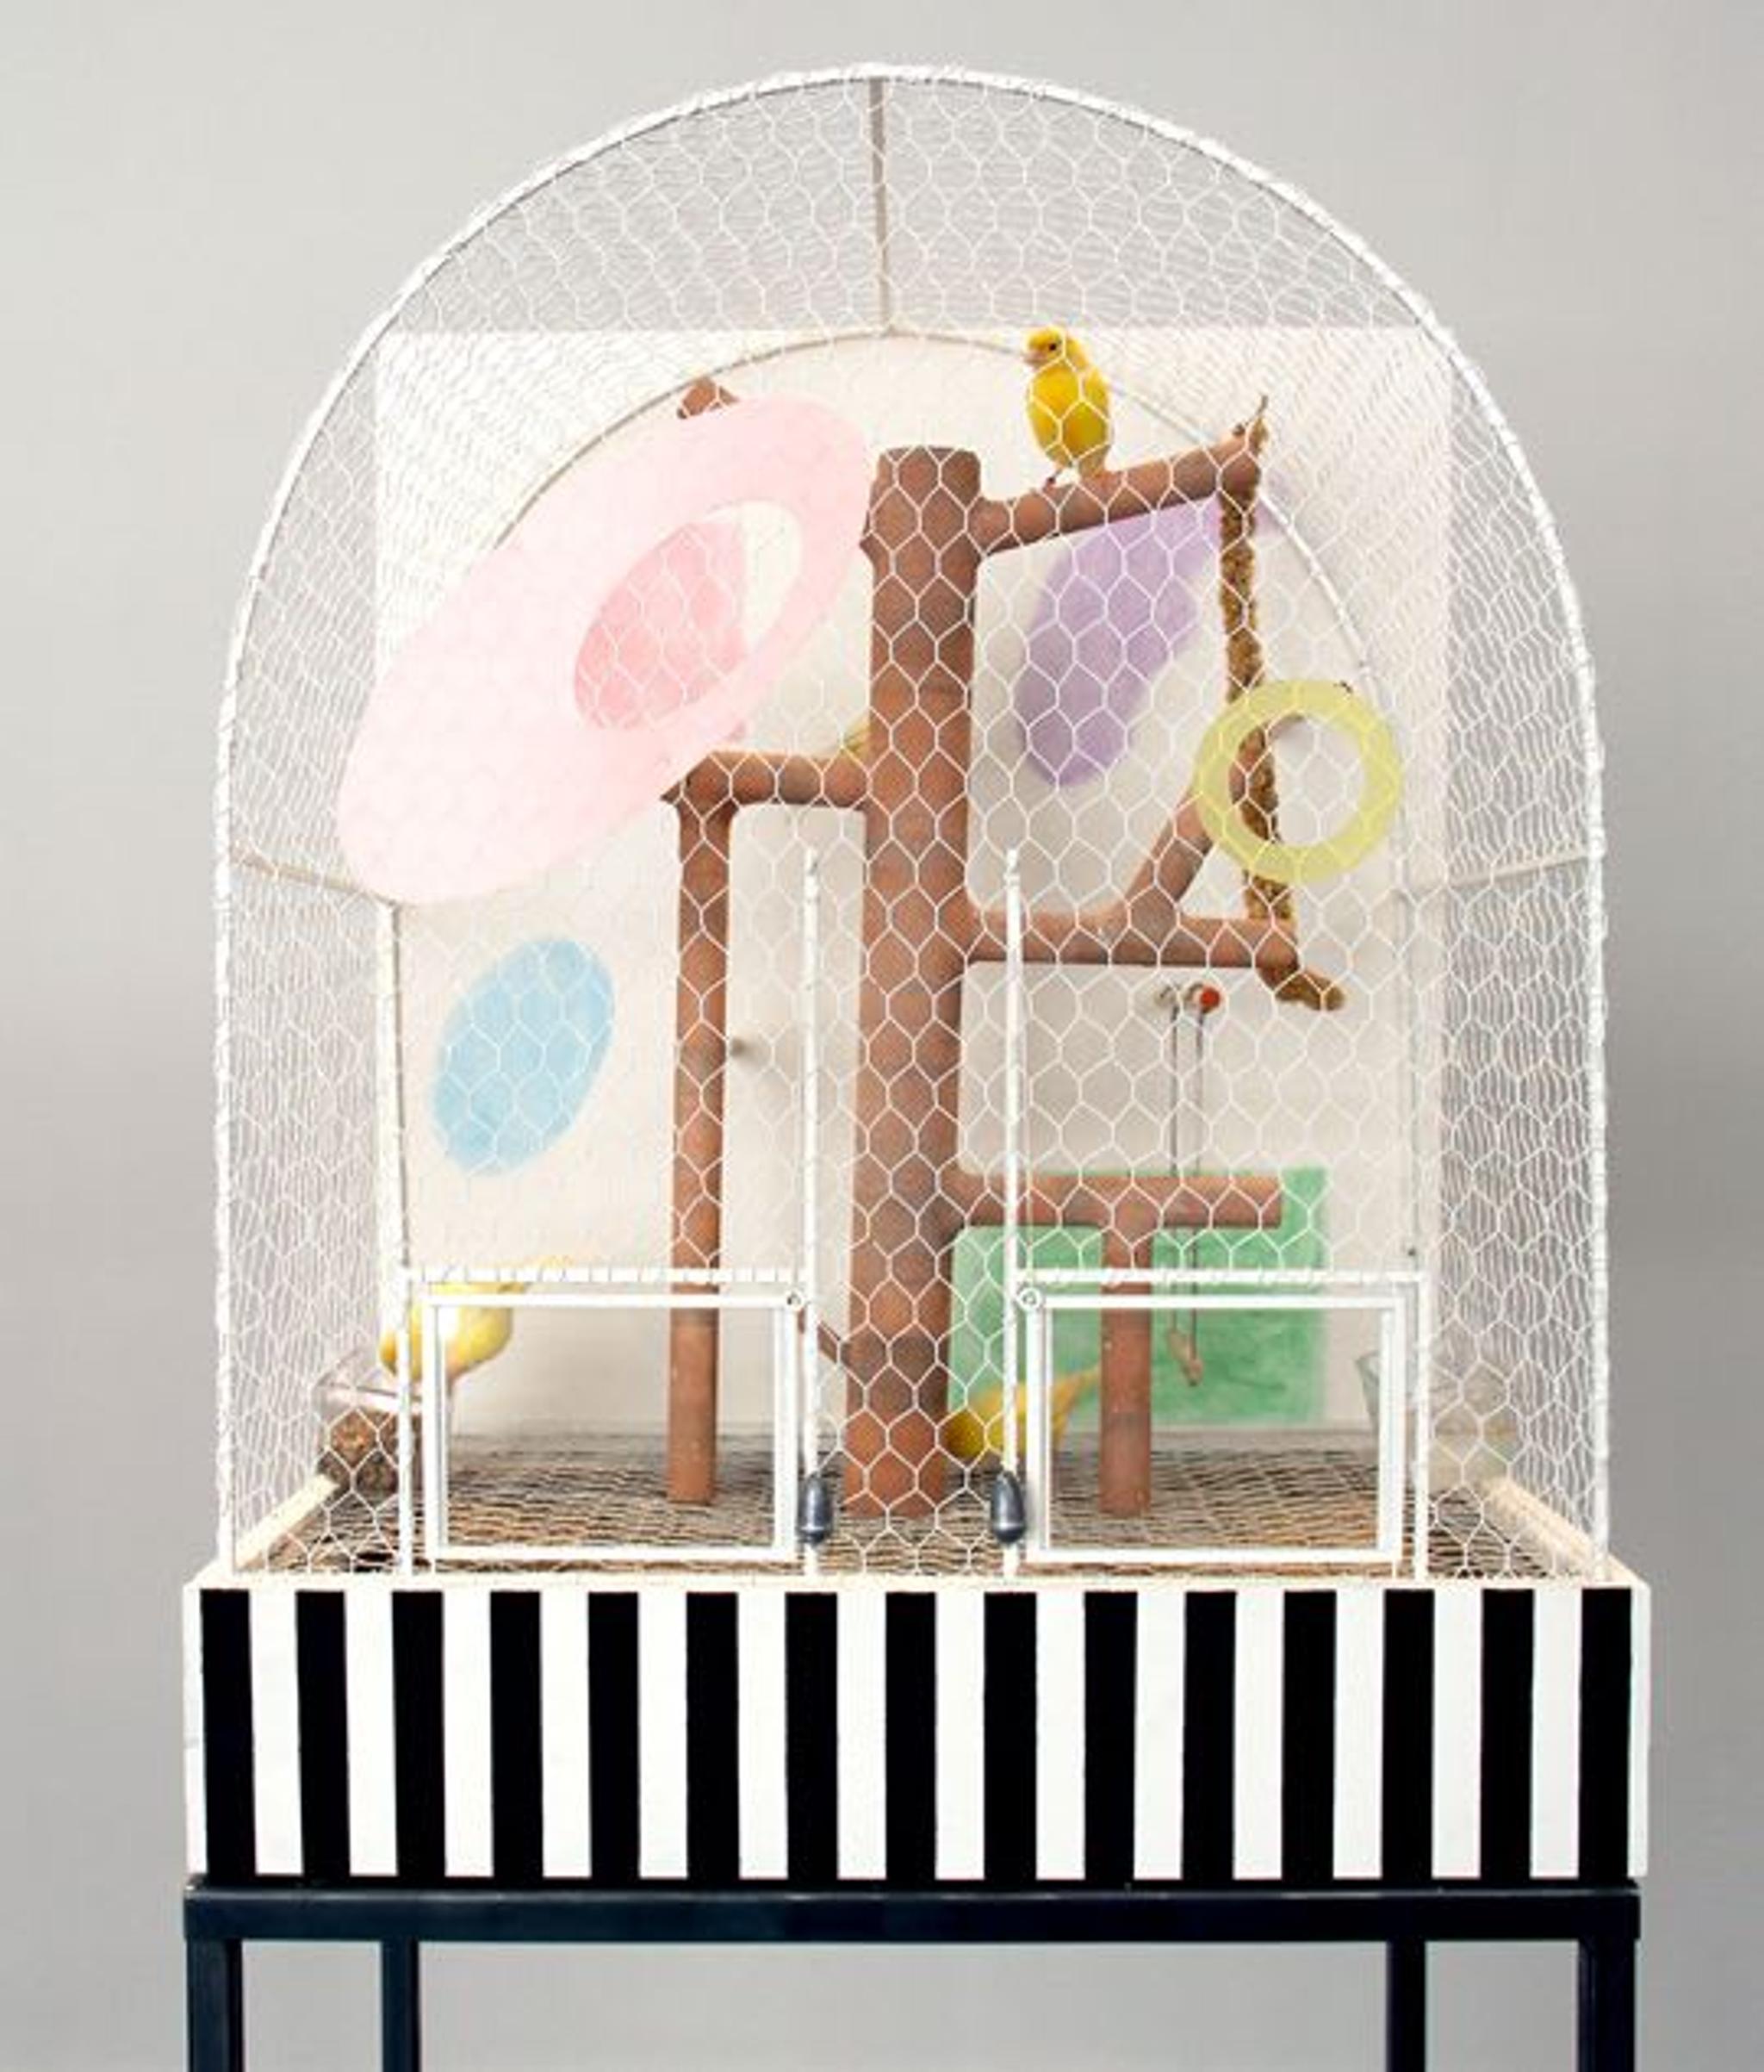 Cage à oiseaux pour canaris conçue par Andrea Branzi à la Galleria Luisa Delle Piane.